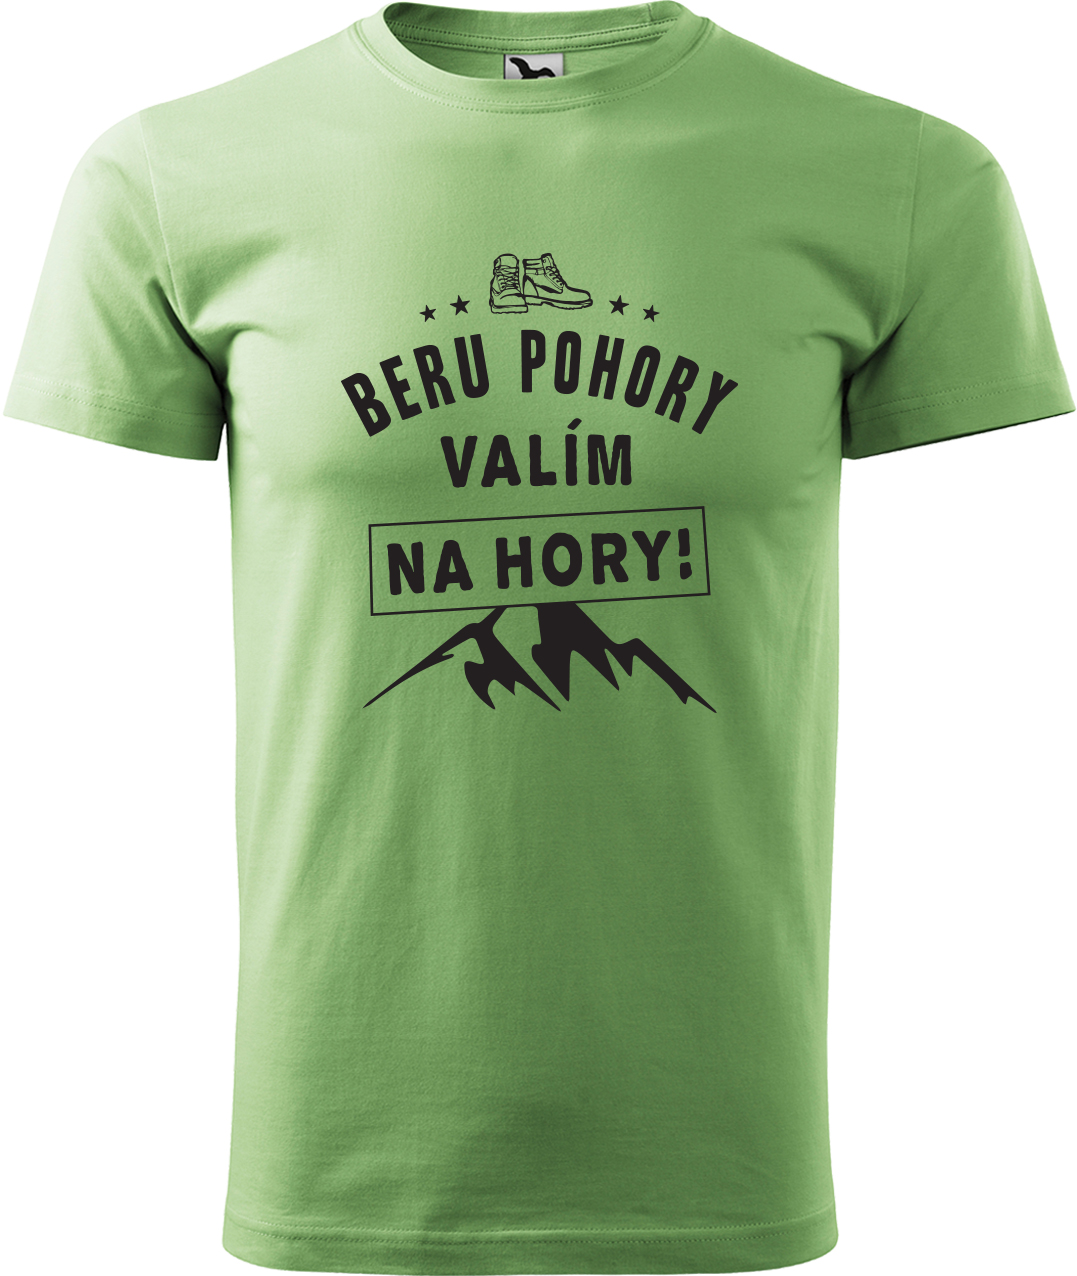 Pánské tričko na hory - Beru pohory, valím na hory Velikost: M, Barva: Trávově zelená (39), Střih: pánský